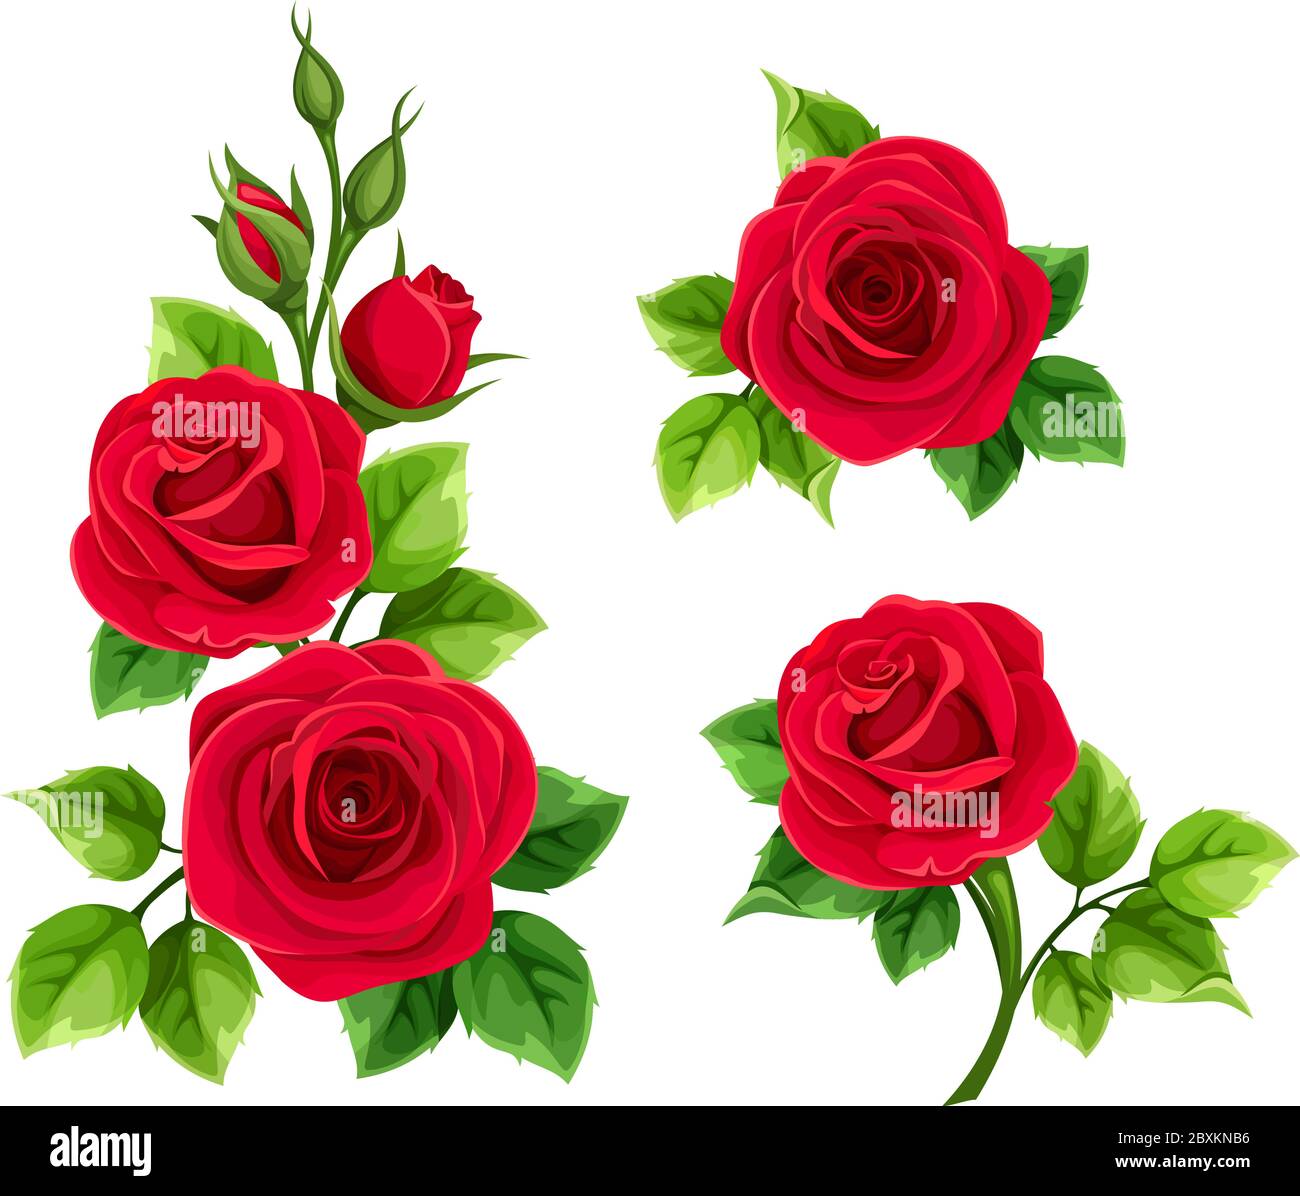 Vektor-Set von roten Rosen auf einem weißen Hintergrund isoliert. Stock Vektor